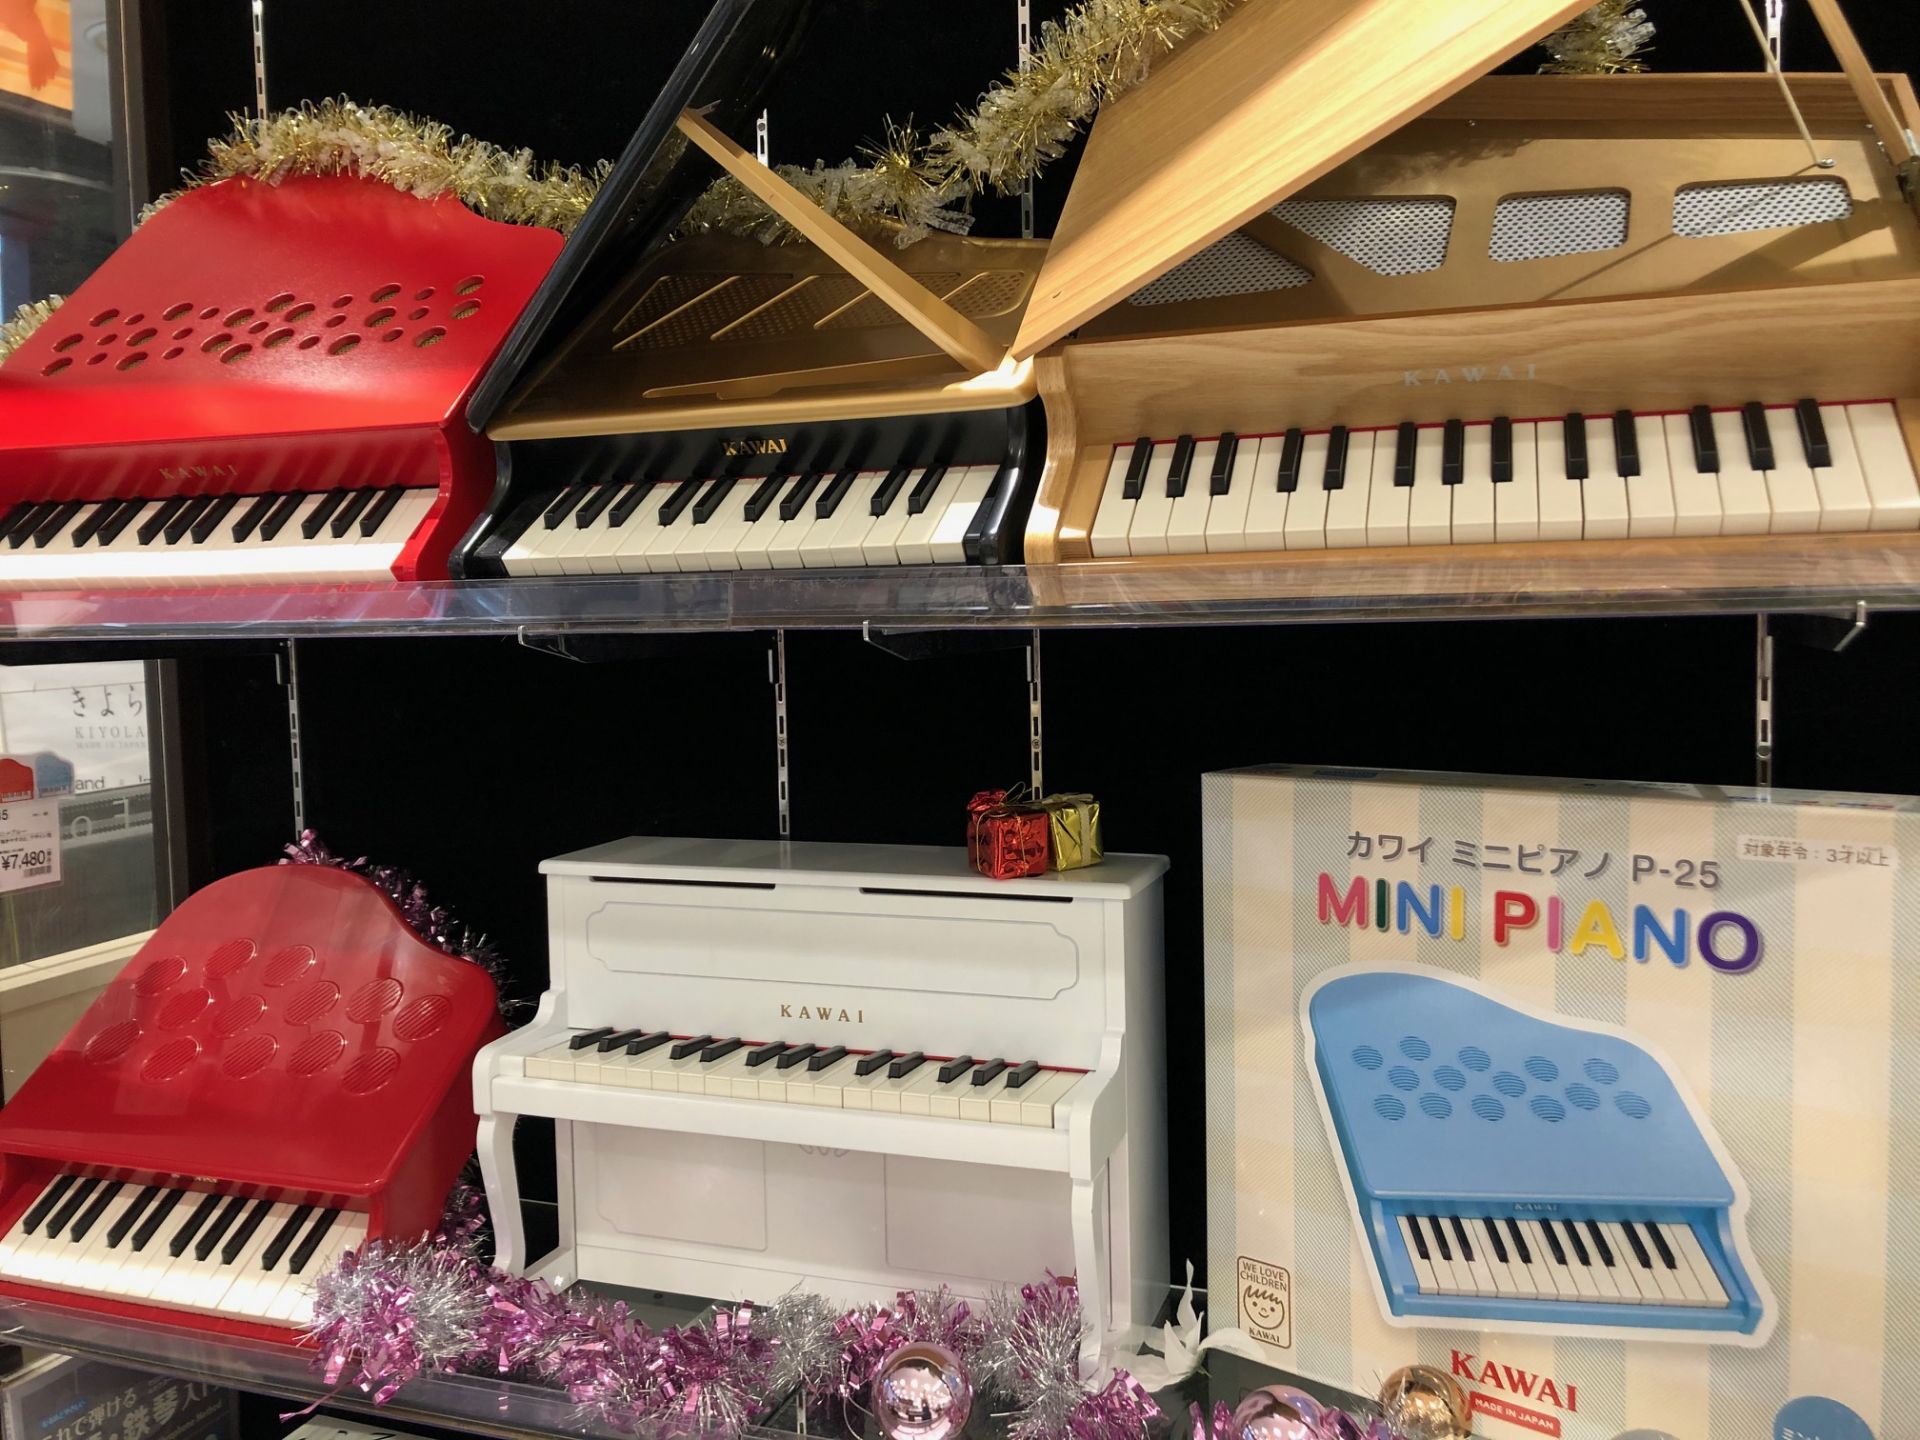 ミニピアノ クリスマスプレゼントにおすすめ カワイミニピアノ揃えています イオンモールりんくう泉南店 店舗情報 島村楽器